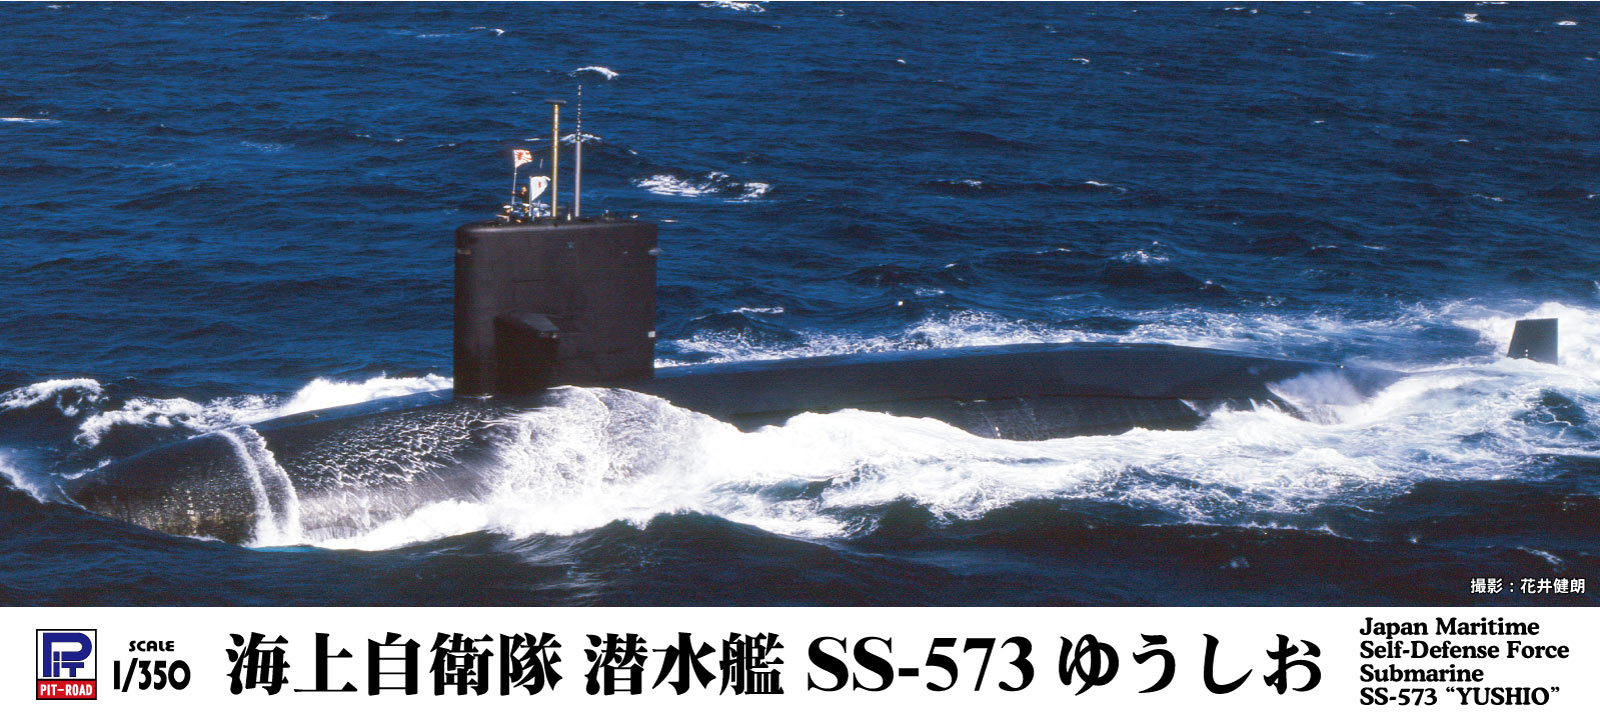 「ゆうしお」型は、海上自衛隊初の涙滴型・1軸推進方式潜水艦となった「うずしお」型の拡大・改良型として1976年に1番艦「ゆうしお」が就役しました。
本級は発展する各種装備に対応するため前級「うずしお」型より船体を4m延長し、安全潜航深度の増大と蓄電池の改良による水中持続力の向上に加え、海自初のデジタル式パッシブソナーZQQ-4により索敵能力も向上しています。
また、魚雷発射管からのハープーン対艦ミサイルを発射可能とし、水中放射雑音低減のためマスカー遮音装置の装備の他、低回転の5翔式スキュースクリュープロペラの採用により静寂性も向上しました。

・1/350スケール プラモデル
・フルハルモデル
・SS-574 もちしお、SS-575 せとしお の艦番号・艦名デカール付属
・1隻入り　全長:217mm

【画像は製品を組み立て塗装したものです】【対象年齢】：